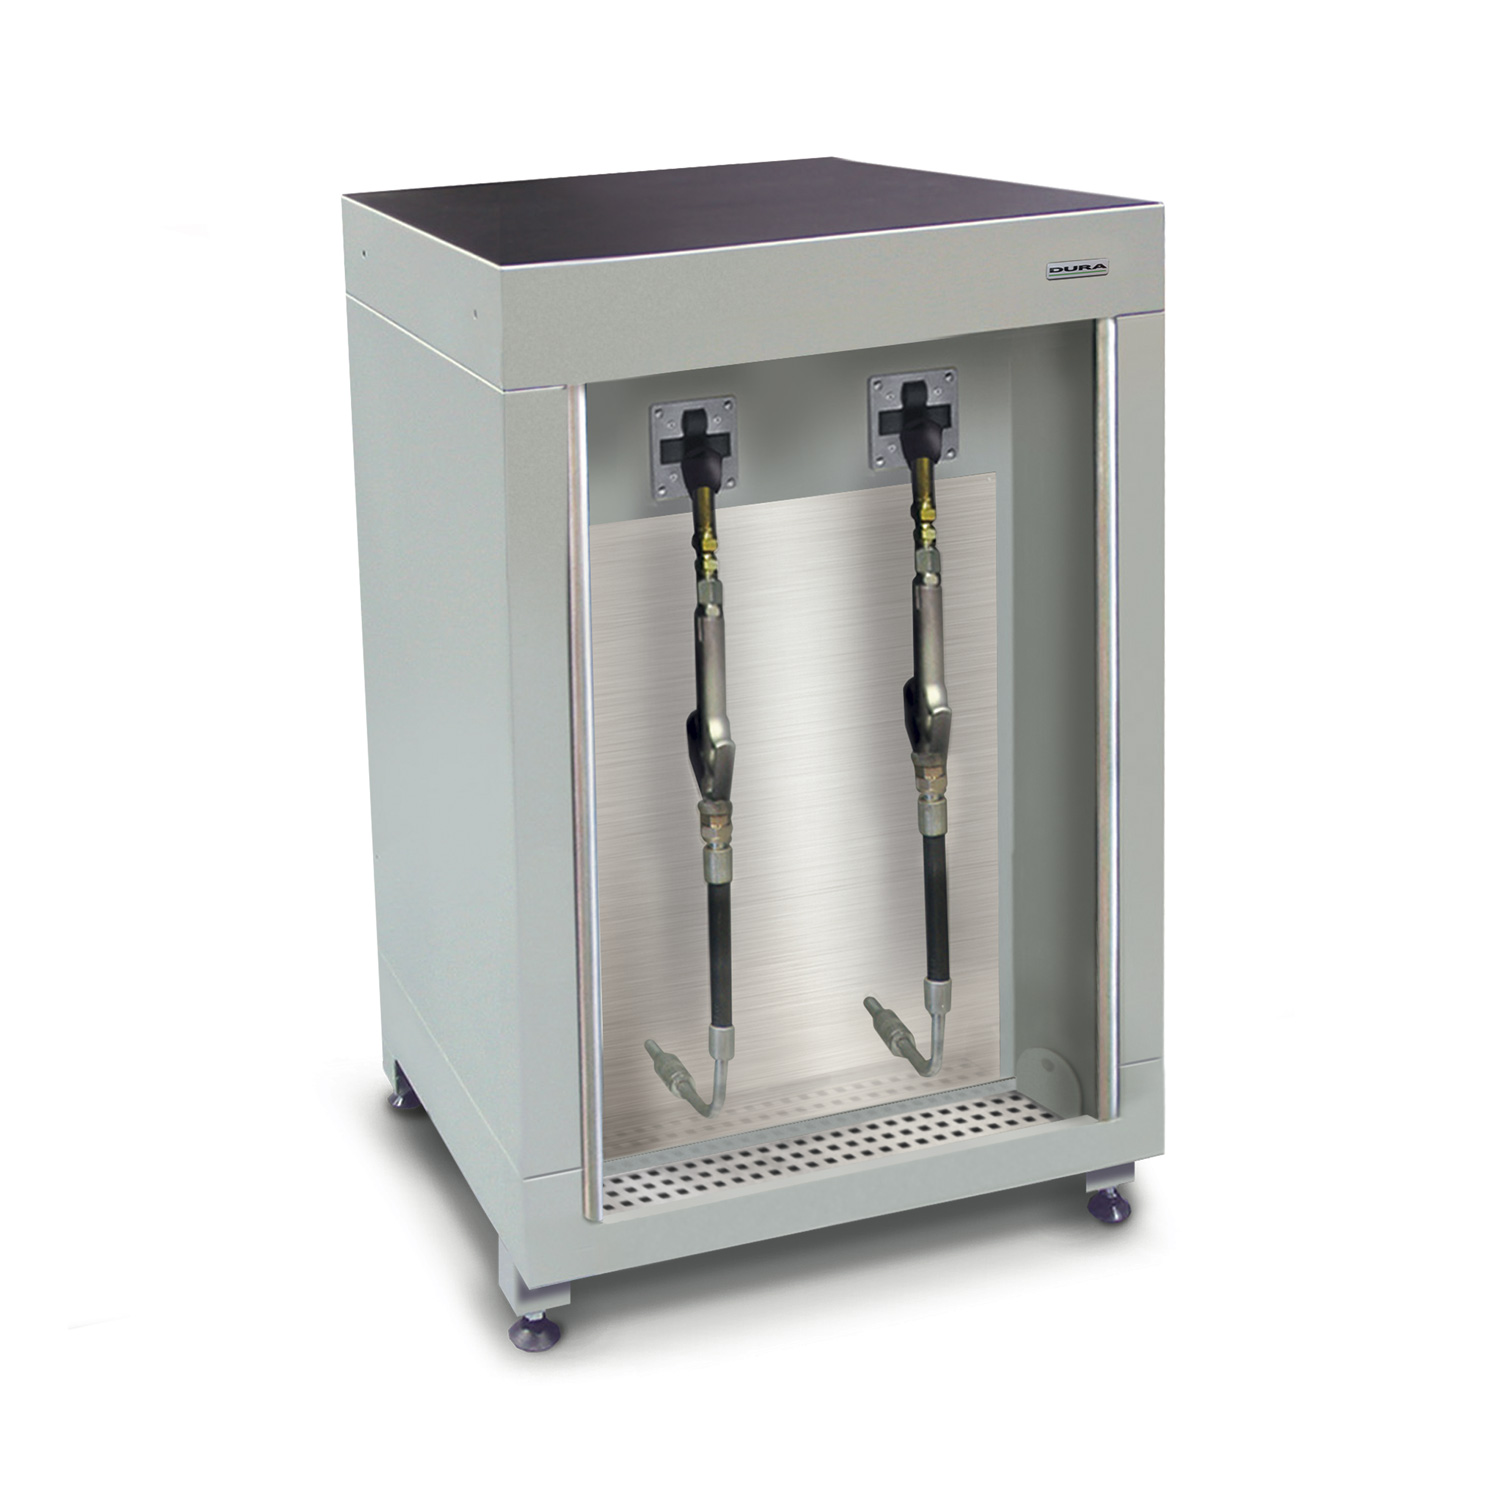 600mm Low-level fluid management cabinet (600mm depth)